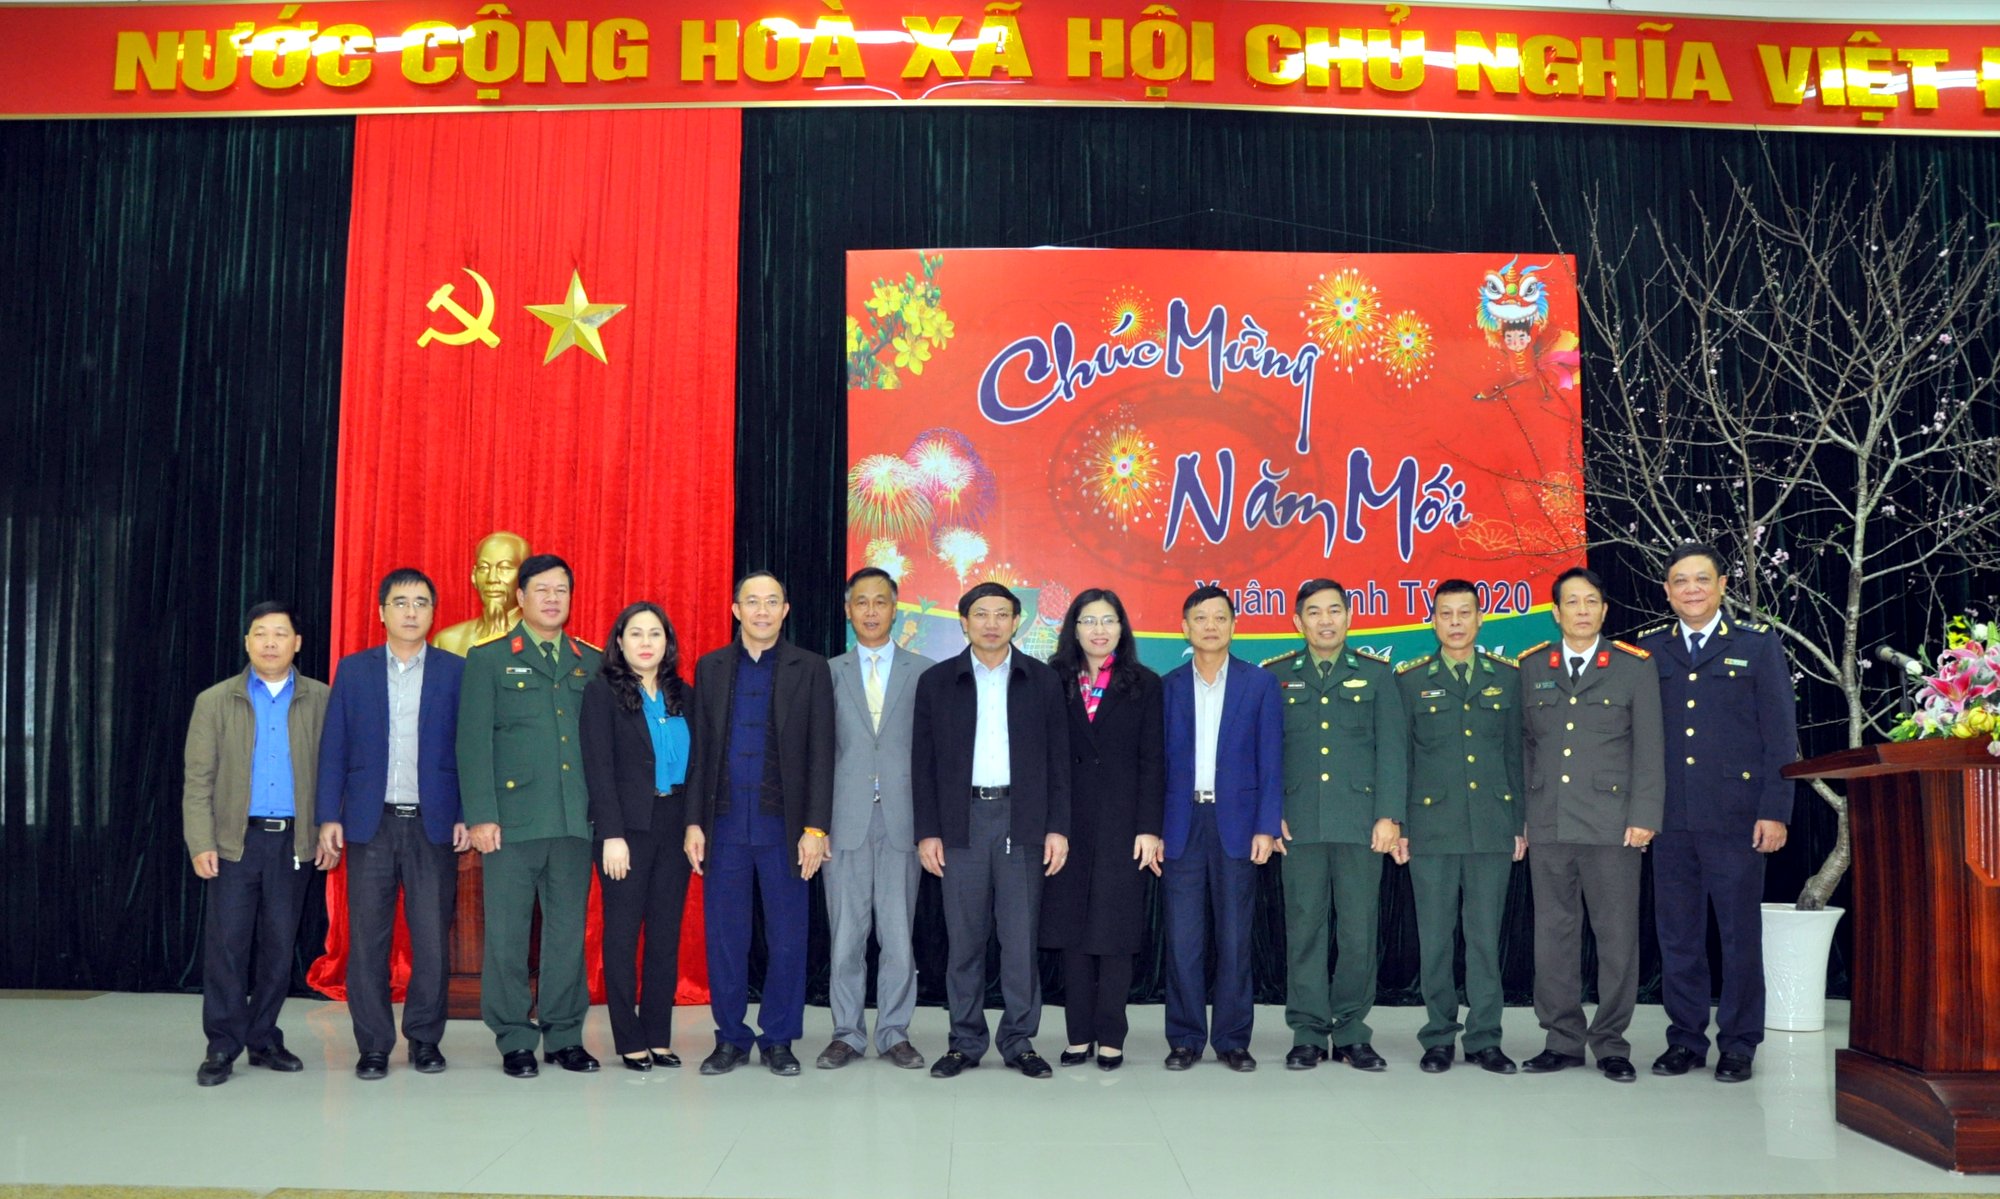 Đồng chí Bí thư Tỉnh ủy, Chủ tịch HĐND tỉnh chúc Tết và chụp ảnh lưu niệm cùng lãnh đạo xã Hoành Mô và đại diện các lực lượng đóng quân trên địa bàn.